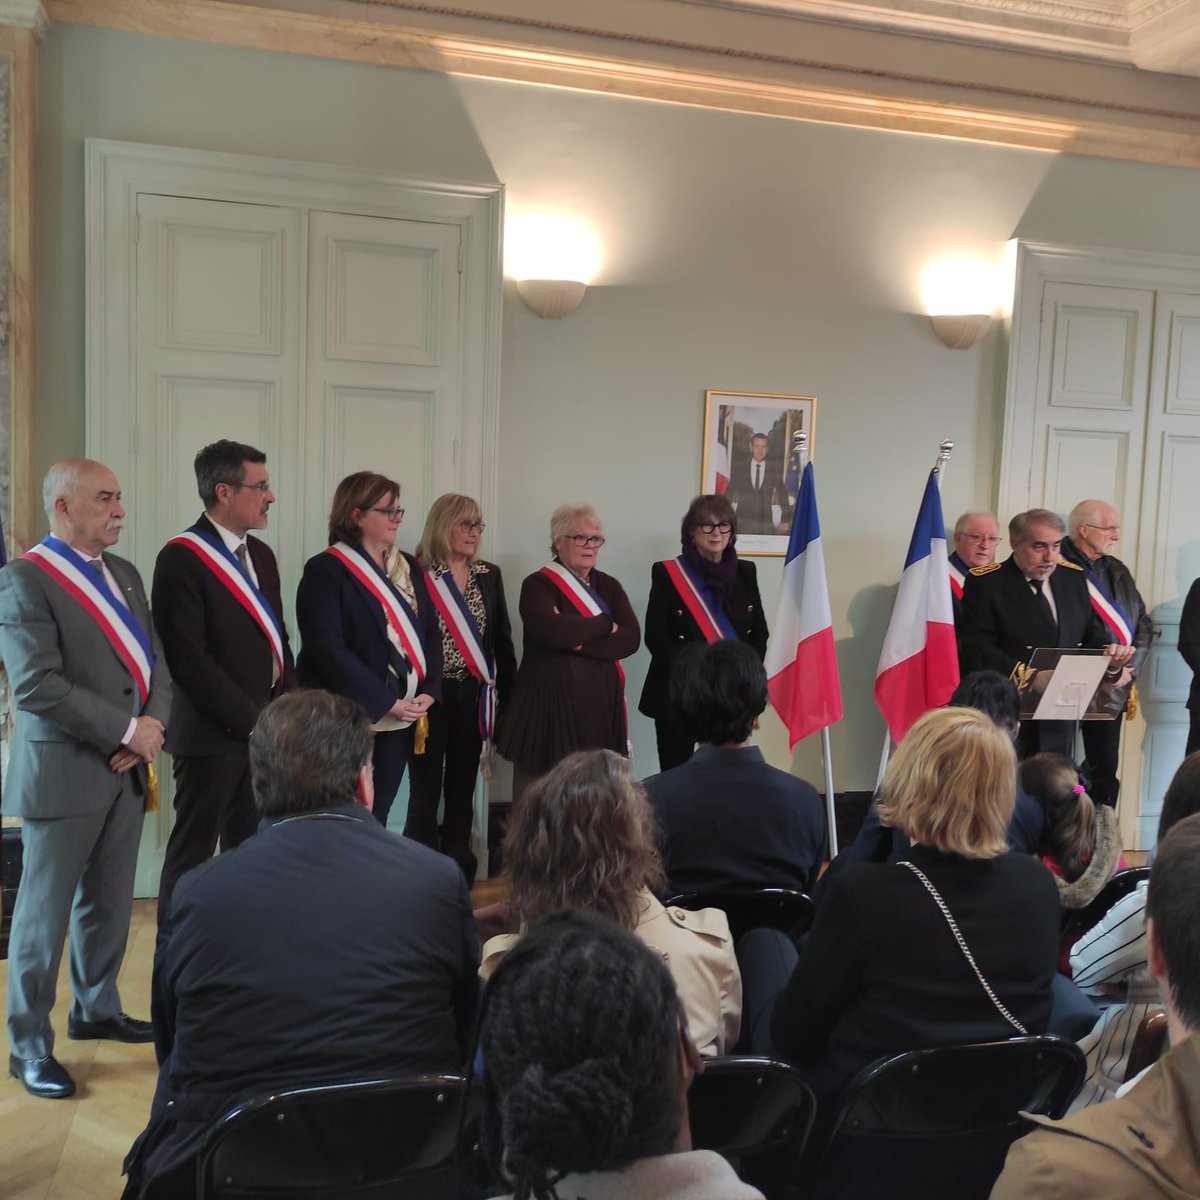 #Citoyenneté | Retour sur la cérémonie de #naturalisation présidée par M.Mailles, sous-préfet de #Fontainebleau, en présence d’élus. Félicitations aux nouveaux Français ! 🇫🇷